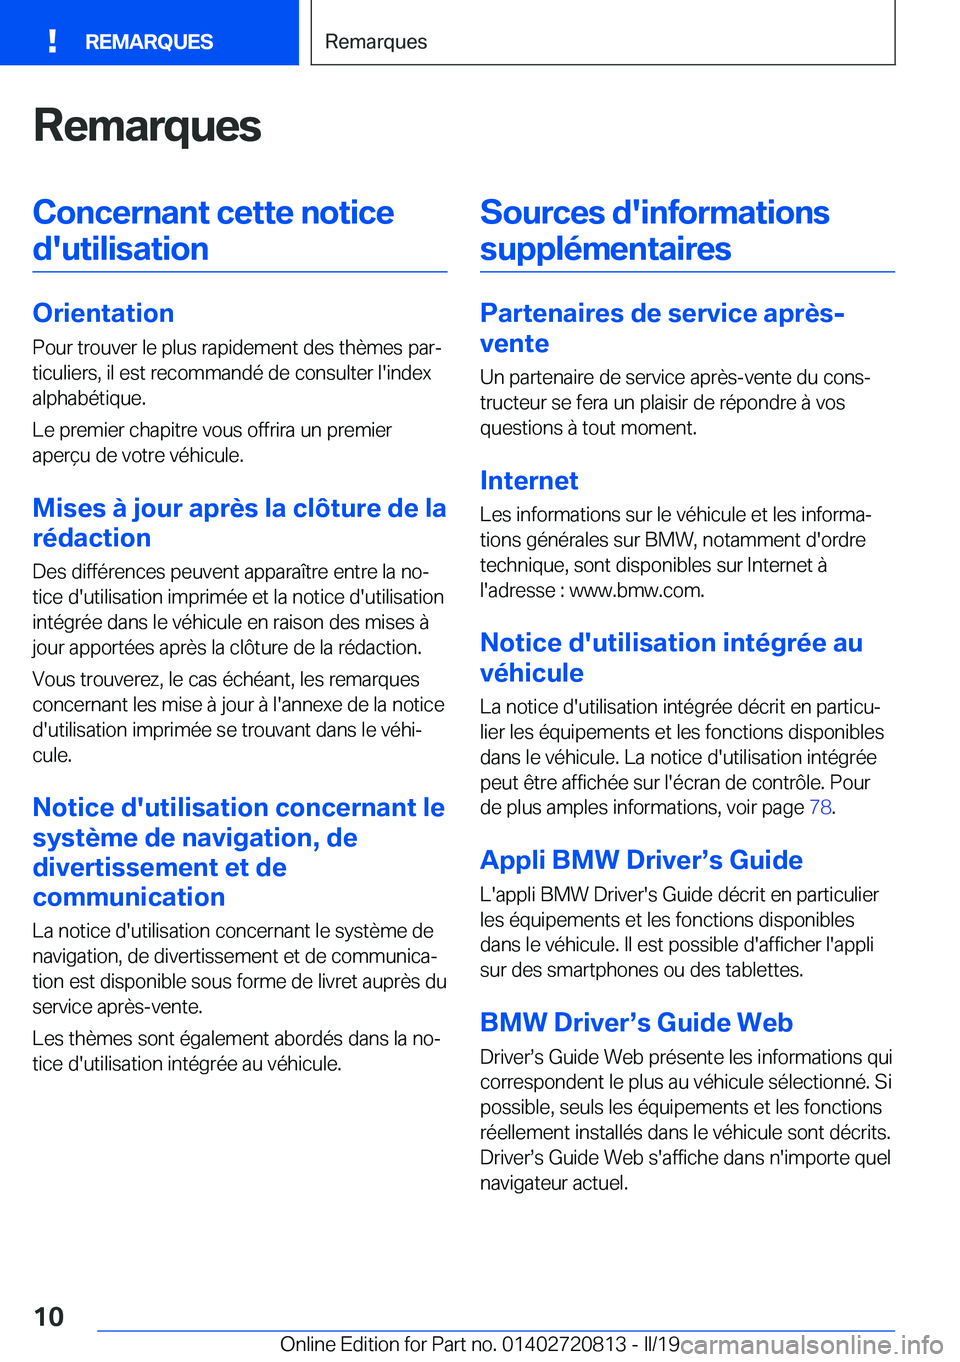 BMW X4 2019  Notices Demploi (in French) �R�e�m�a�r�q�u�e�s�C�o�n�c�e�r�n�a�n�t��c�e�t�t�e��n�o�t�i�c�e�d�'�u�t�i�l�i�s�a�t�i�o�n
�O�r�i�e�n�t�a�t�i�o�n �P�o�u�r��t�r�o�u�v�e�r��l�e��p�l�u�s��r�a�p�i�d�e�m�e�n�t��d�e�s��t�h�è�m�